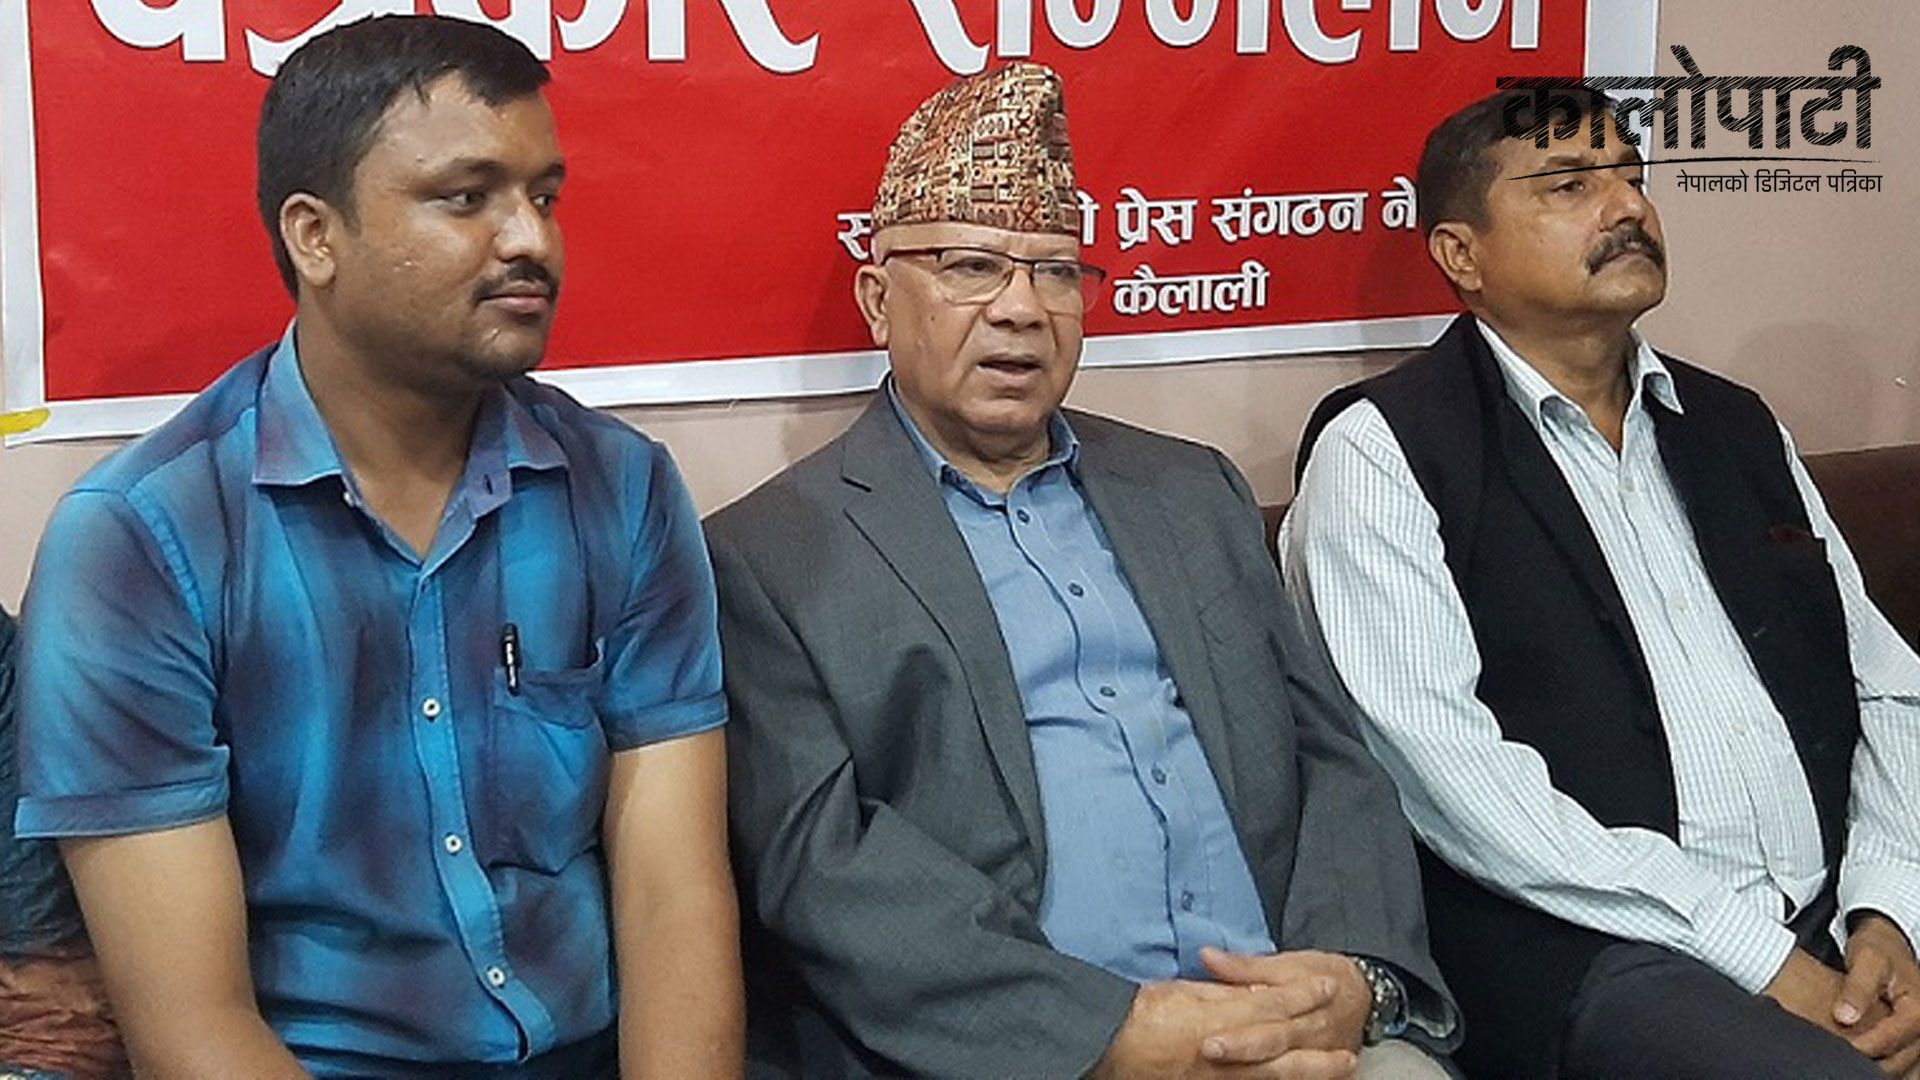 ‘राष्ट्र र जनताको हितका लागि नै एकीकृत समाजवादी पार्टी बनेको हो’ : अध्यक्ष नेपाल